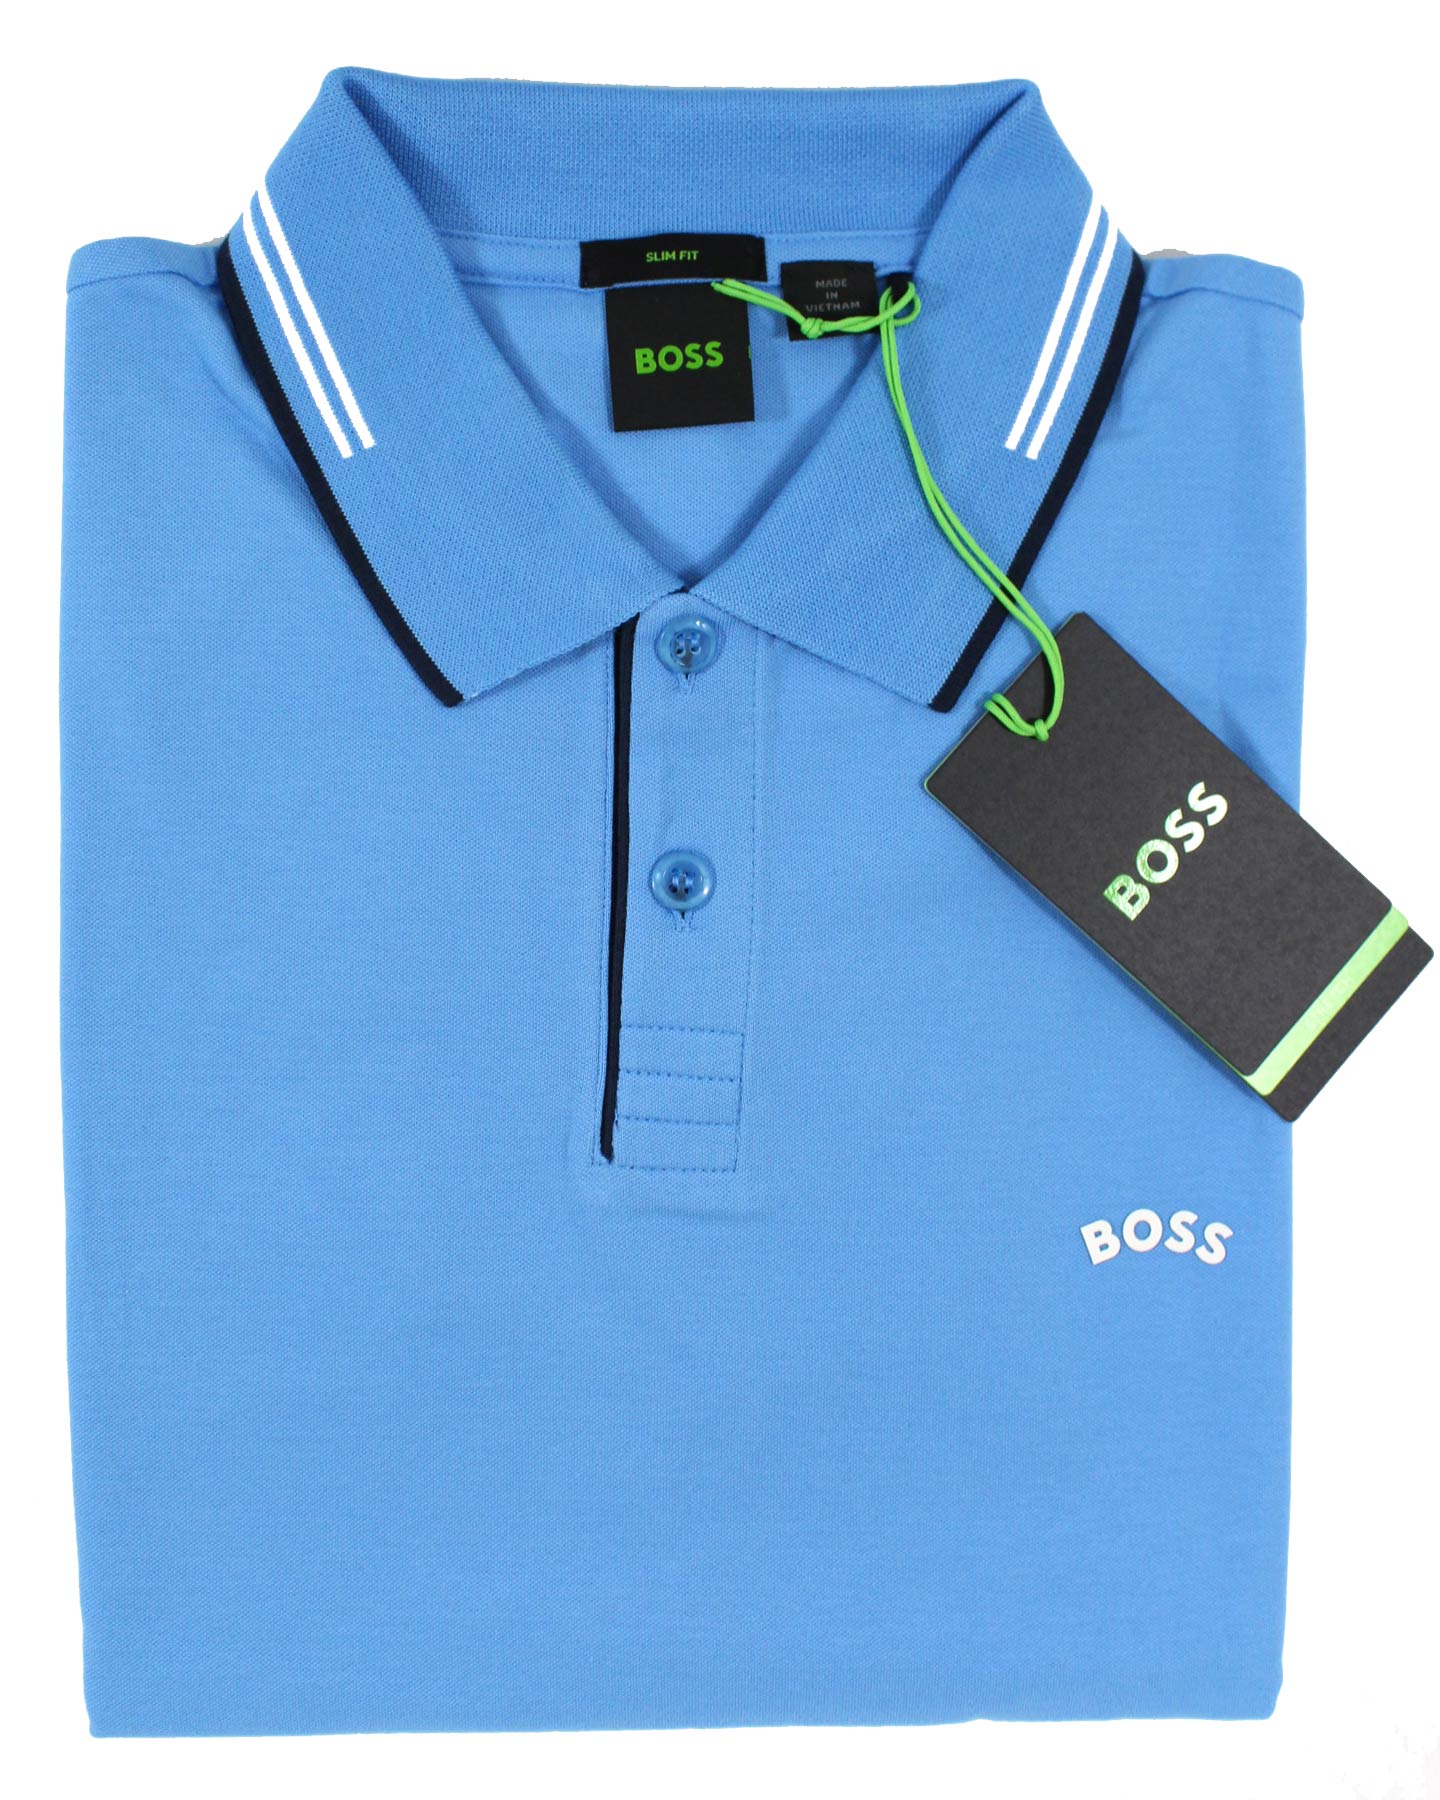 Hugo Boss Polo Shirt Slim Fit Blue Stretch Cotton